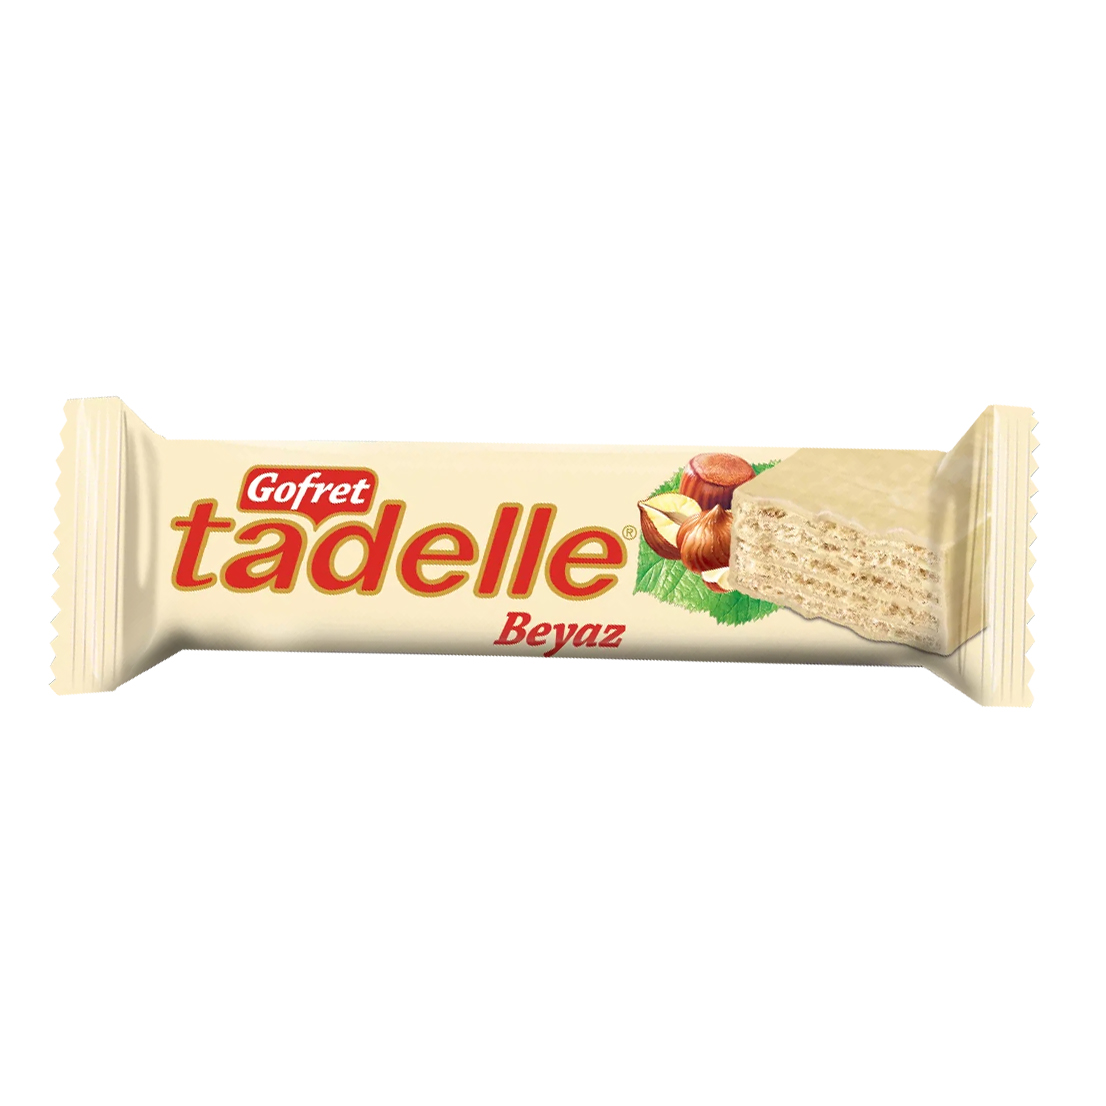 Вафли Sarelle с ореховым кремом в белом шоколаде, 35 г вафли toren mr bite с темно шоколадным кремом 38 г